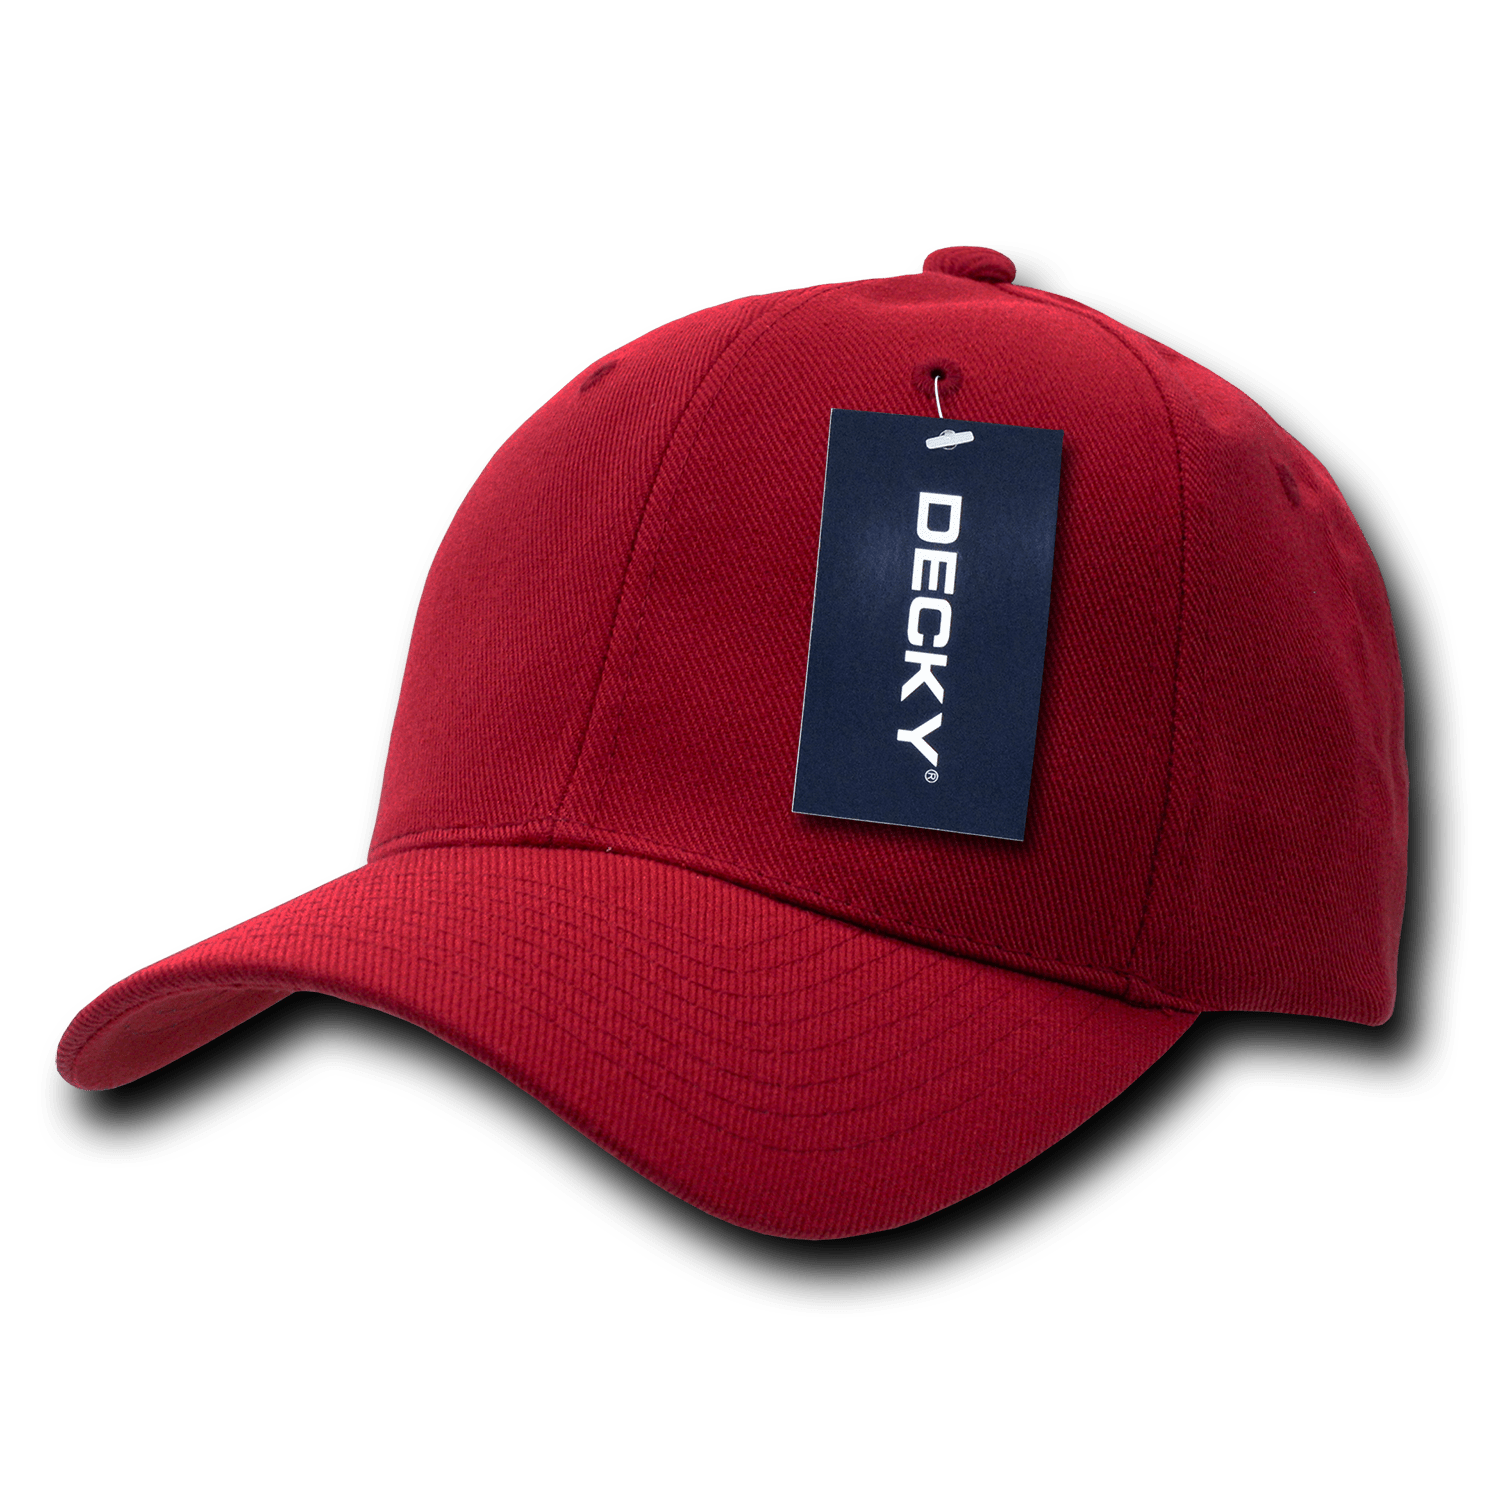 Decky 207 Deluxe Baseball Cap - Cardinal - HIT A Double